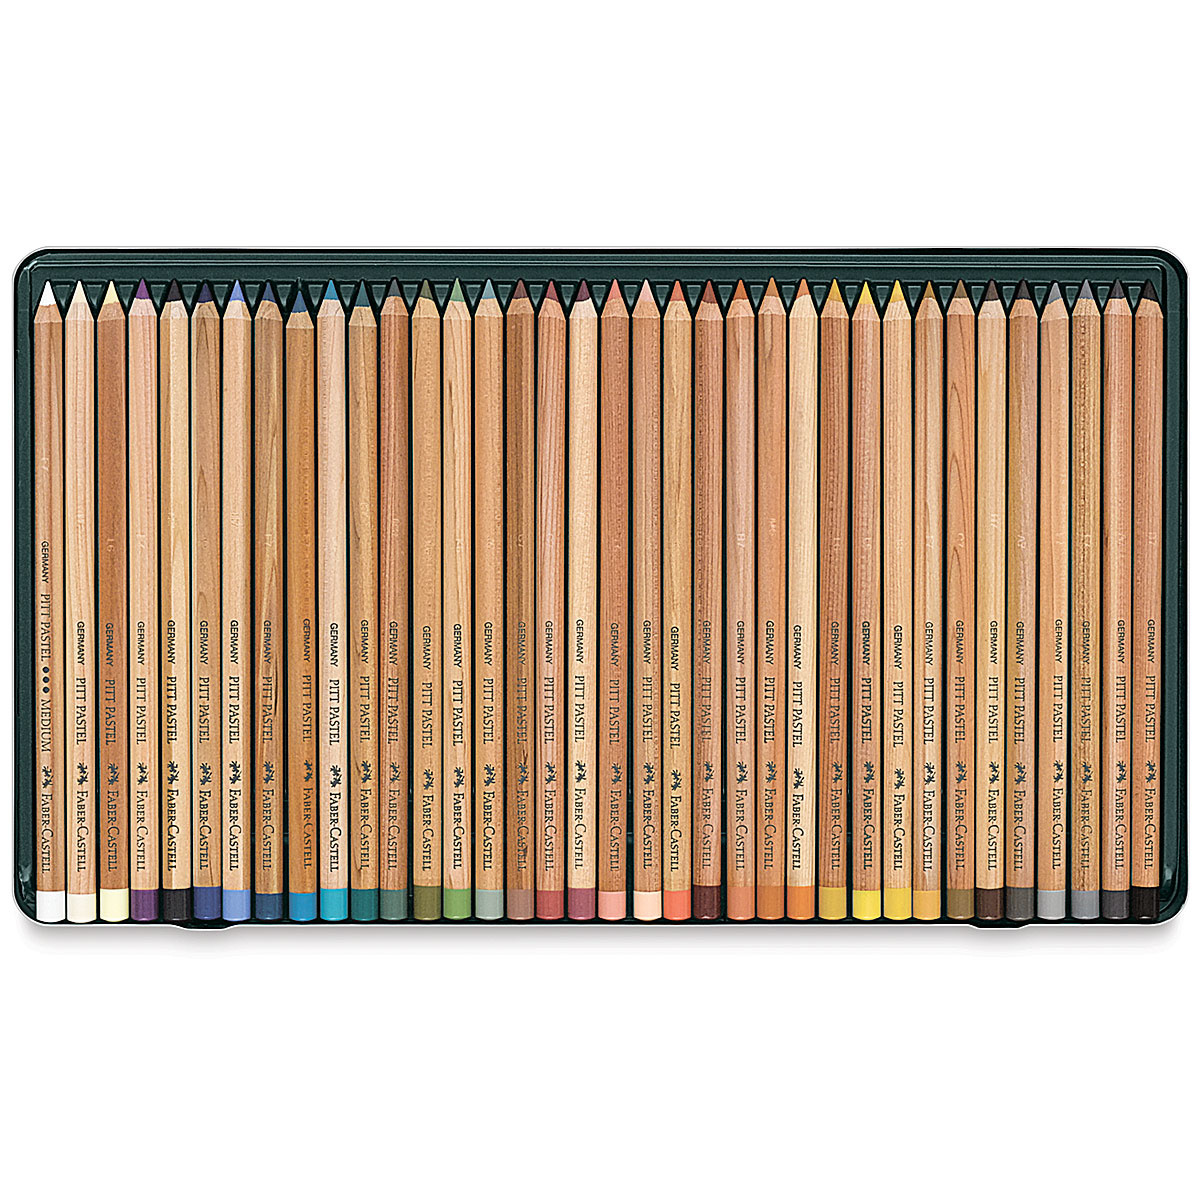 Pitt Pastel pencil, tin of 36